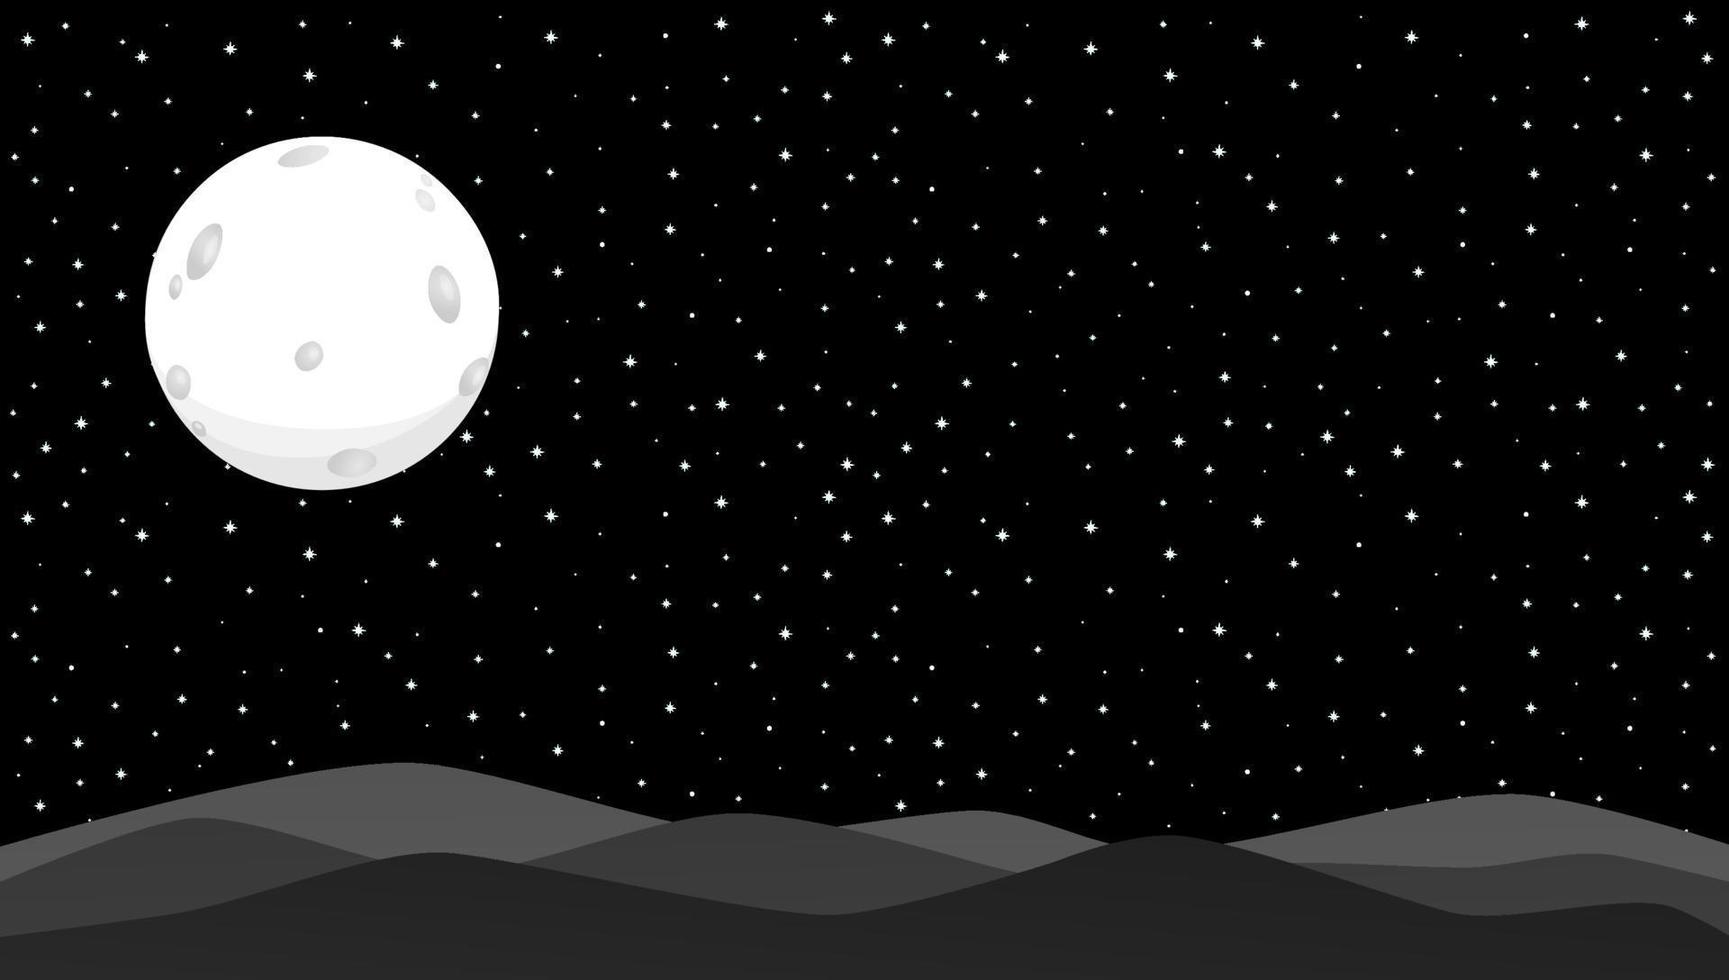 fundo da noite com lua e estrelas cheias. ilustração vetorial. vetor